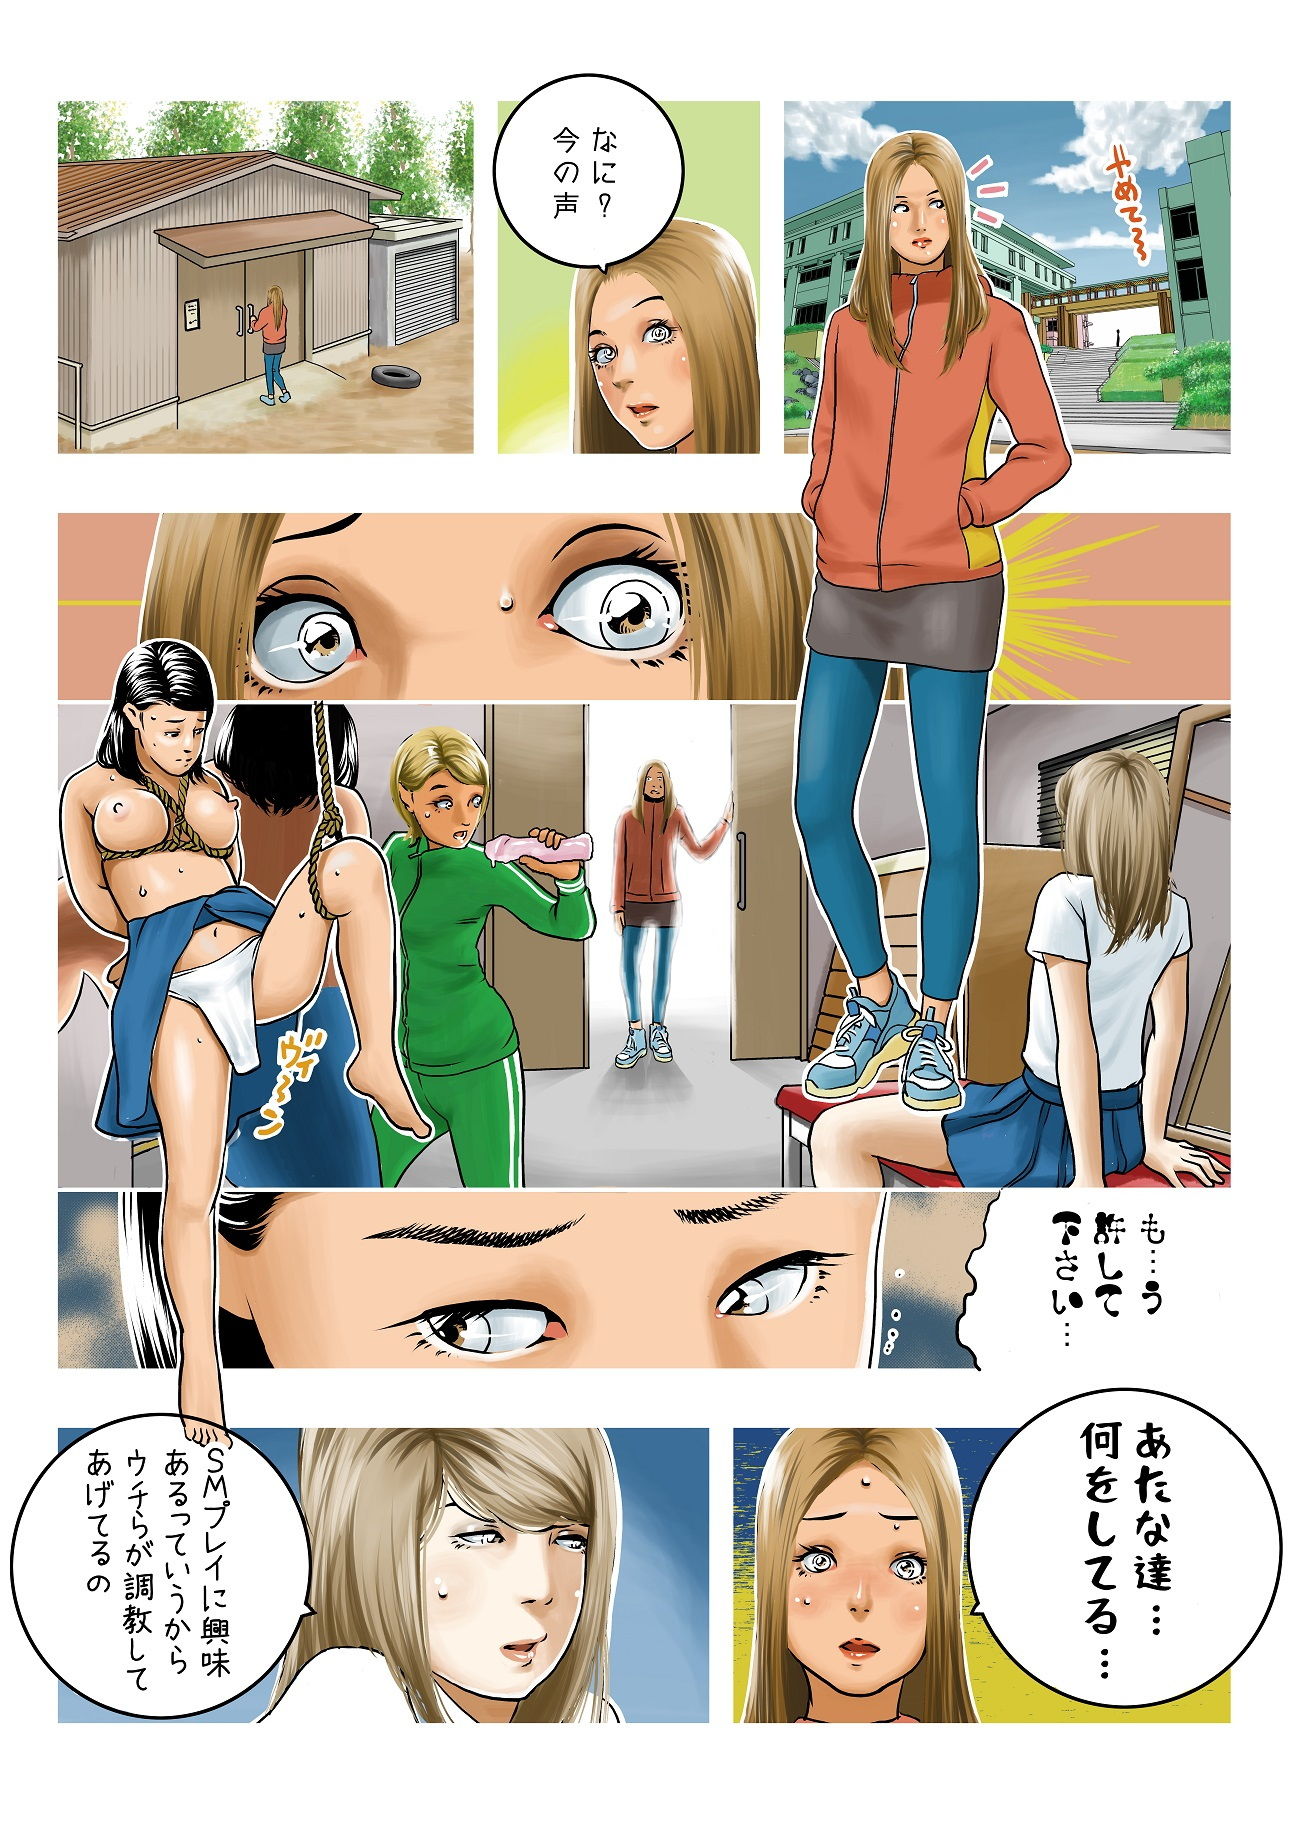 ＜過去作品セット販売＞女教師SM物語漫画 5作品セット全174P2